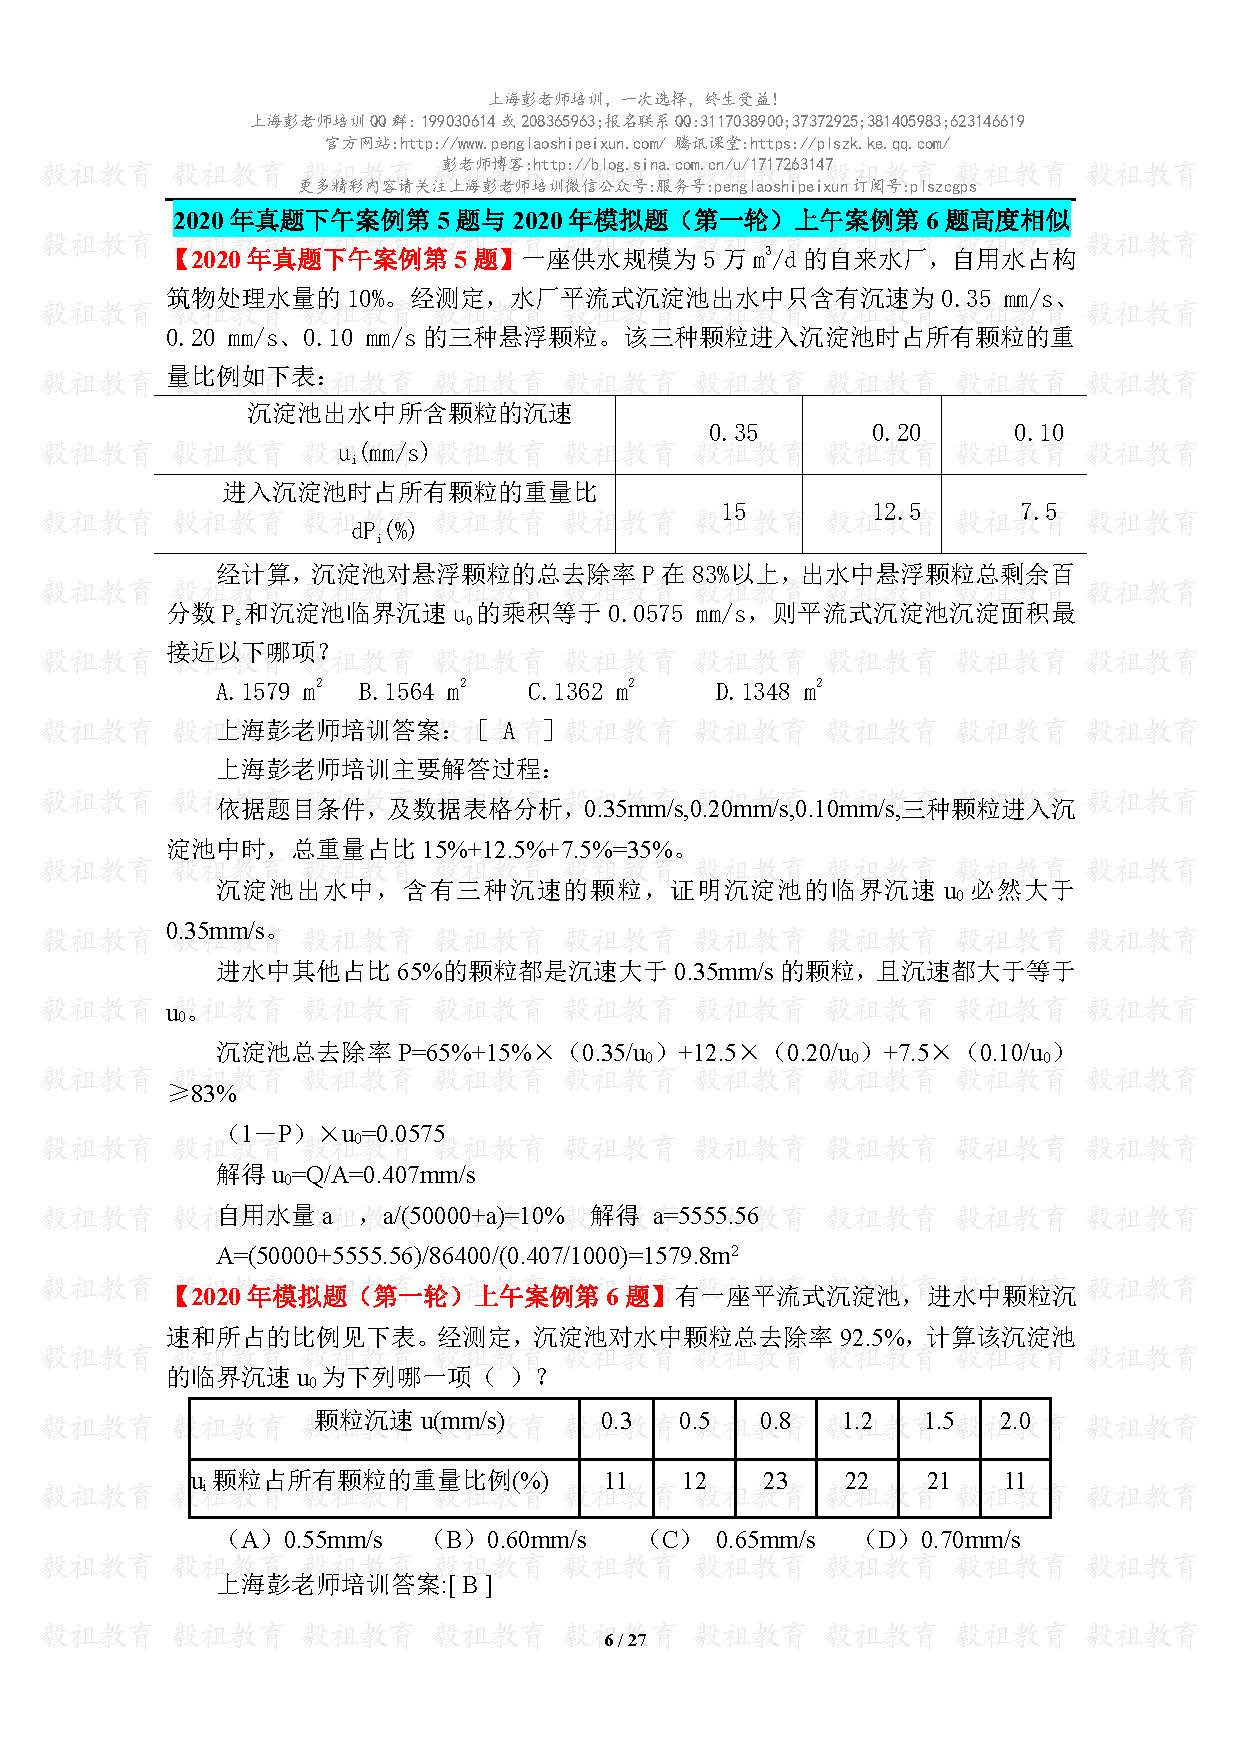 2020注册给排水考试真题与模考题相似度分析-上海彭老师培训_页面_06.jpg.jpg